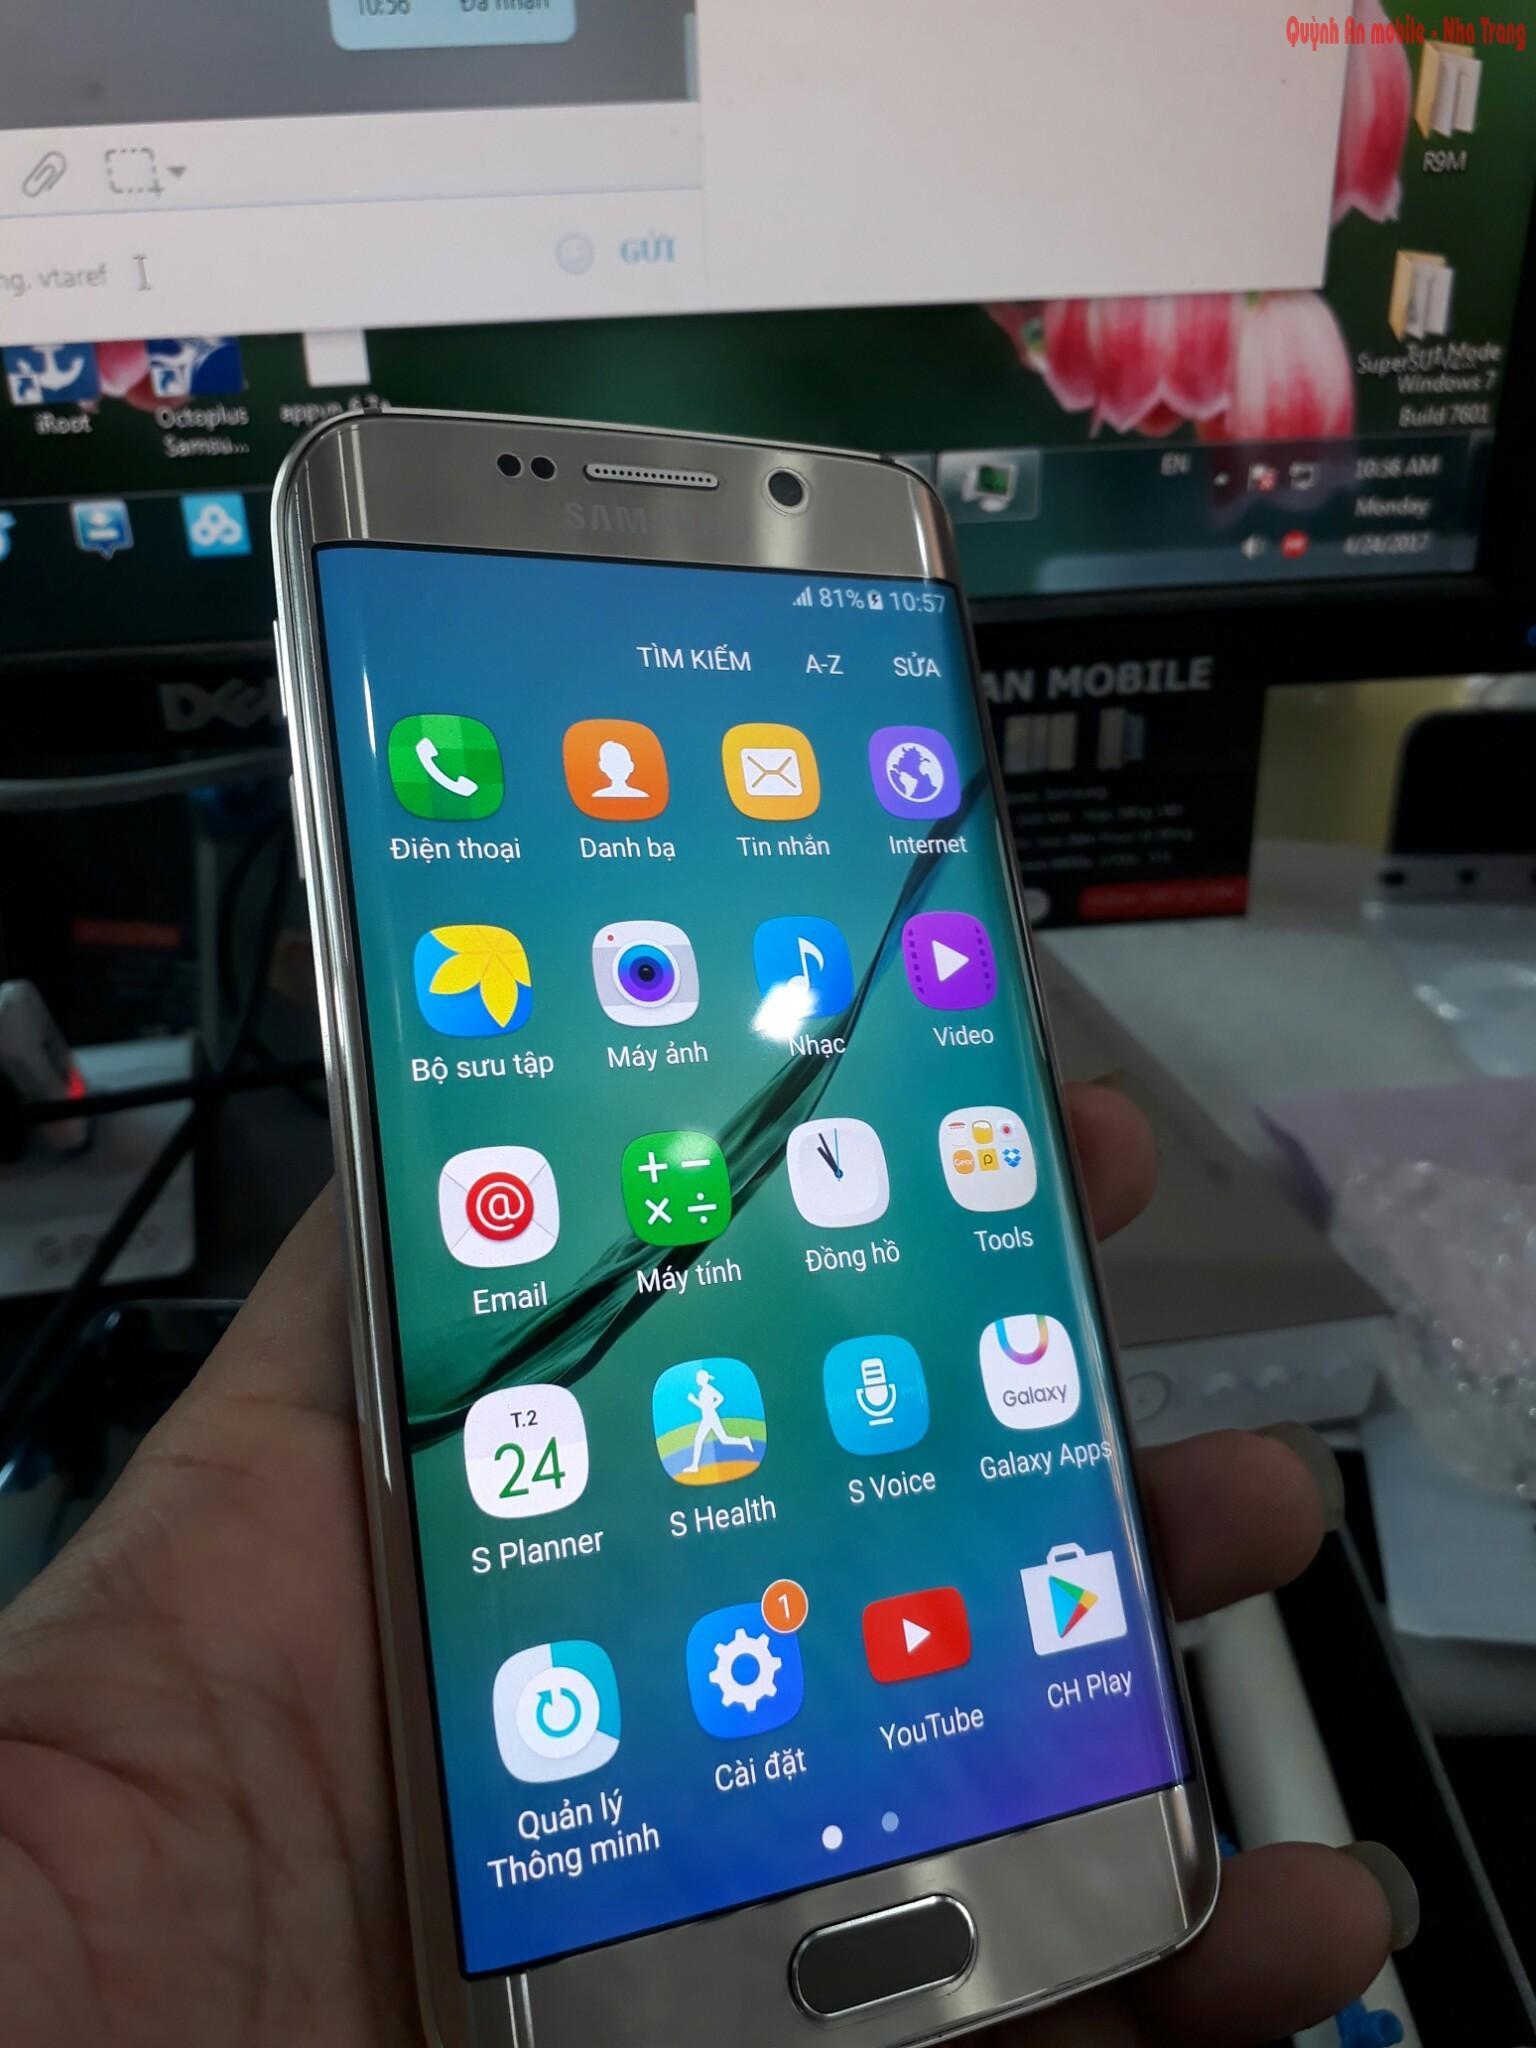 Unlock và nạp tiếng Việt cho Samsung galaxy S6 edge tại Nha Trang mã máy SM-G925F